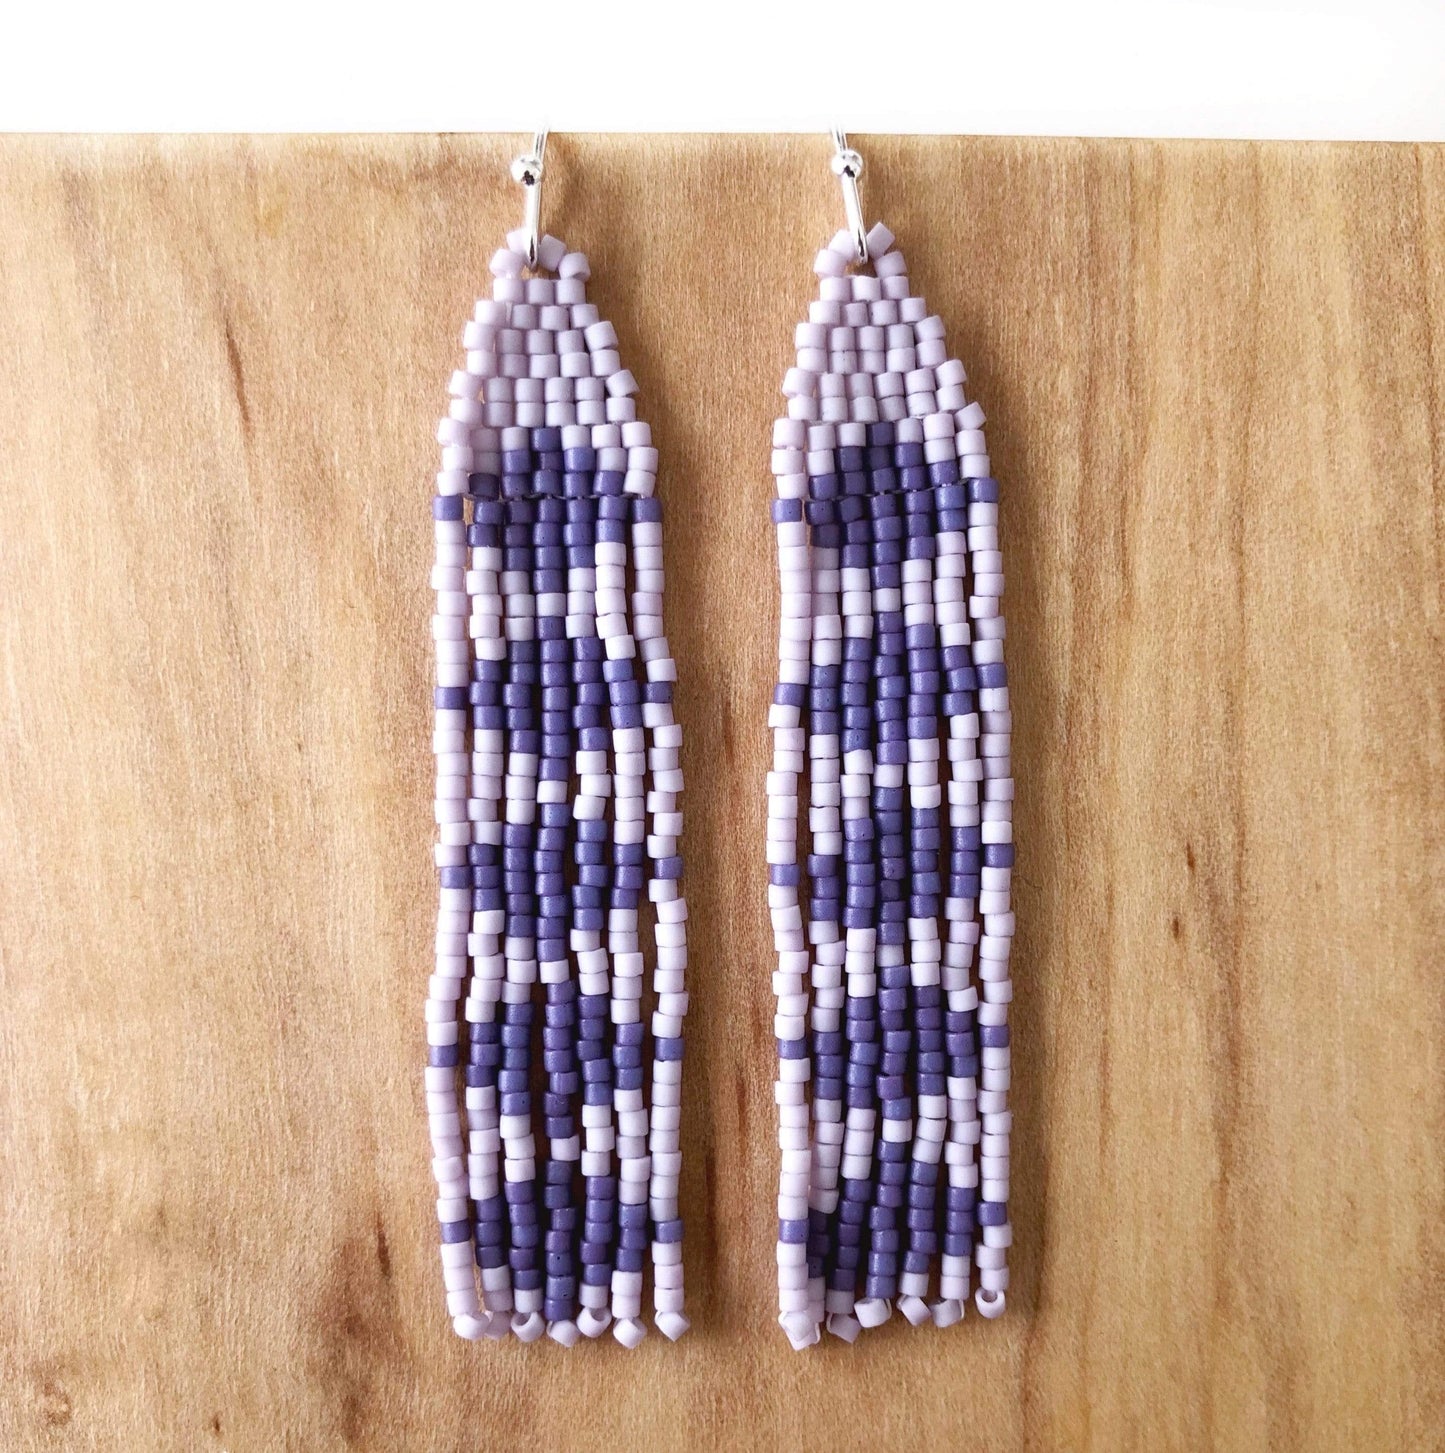 Lillie Nell Pokni Earrings in Lavender + Violet